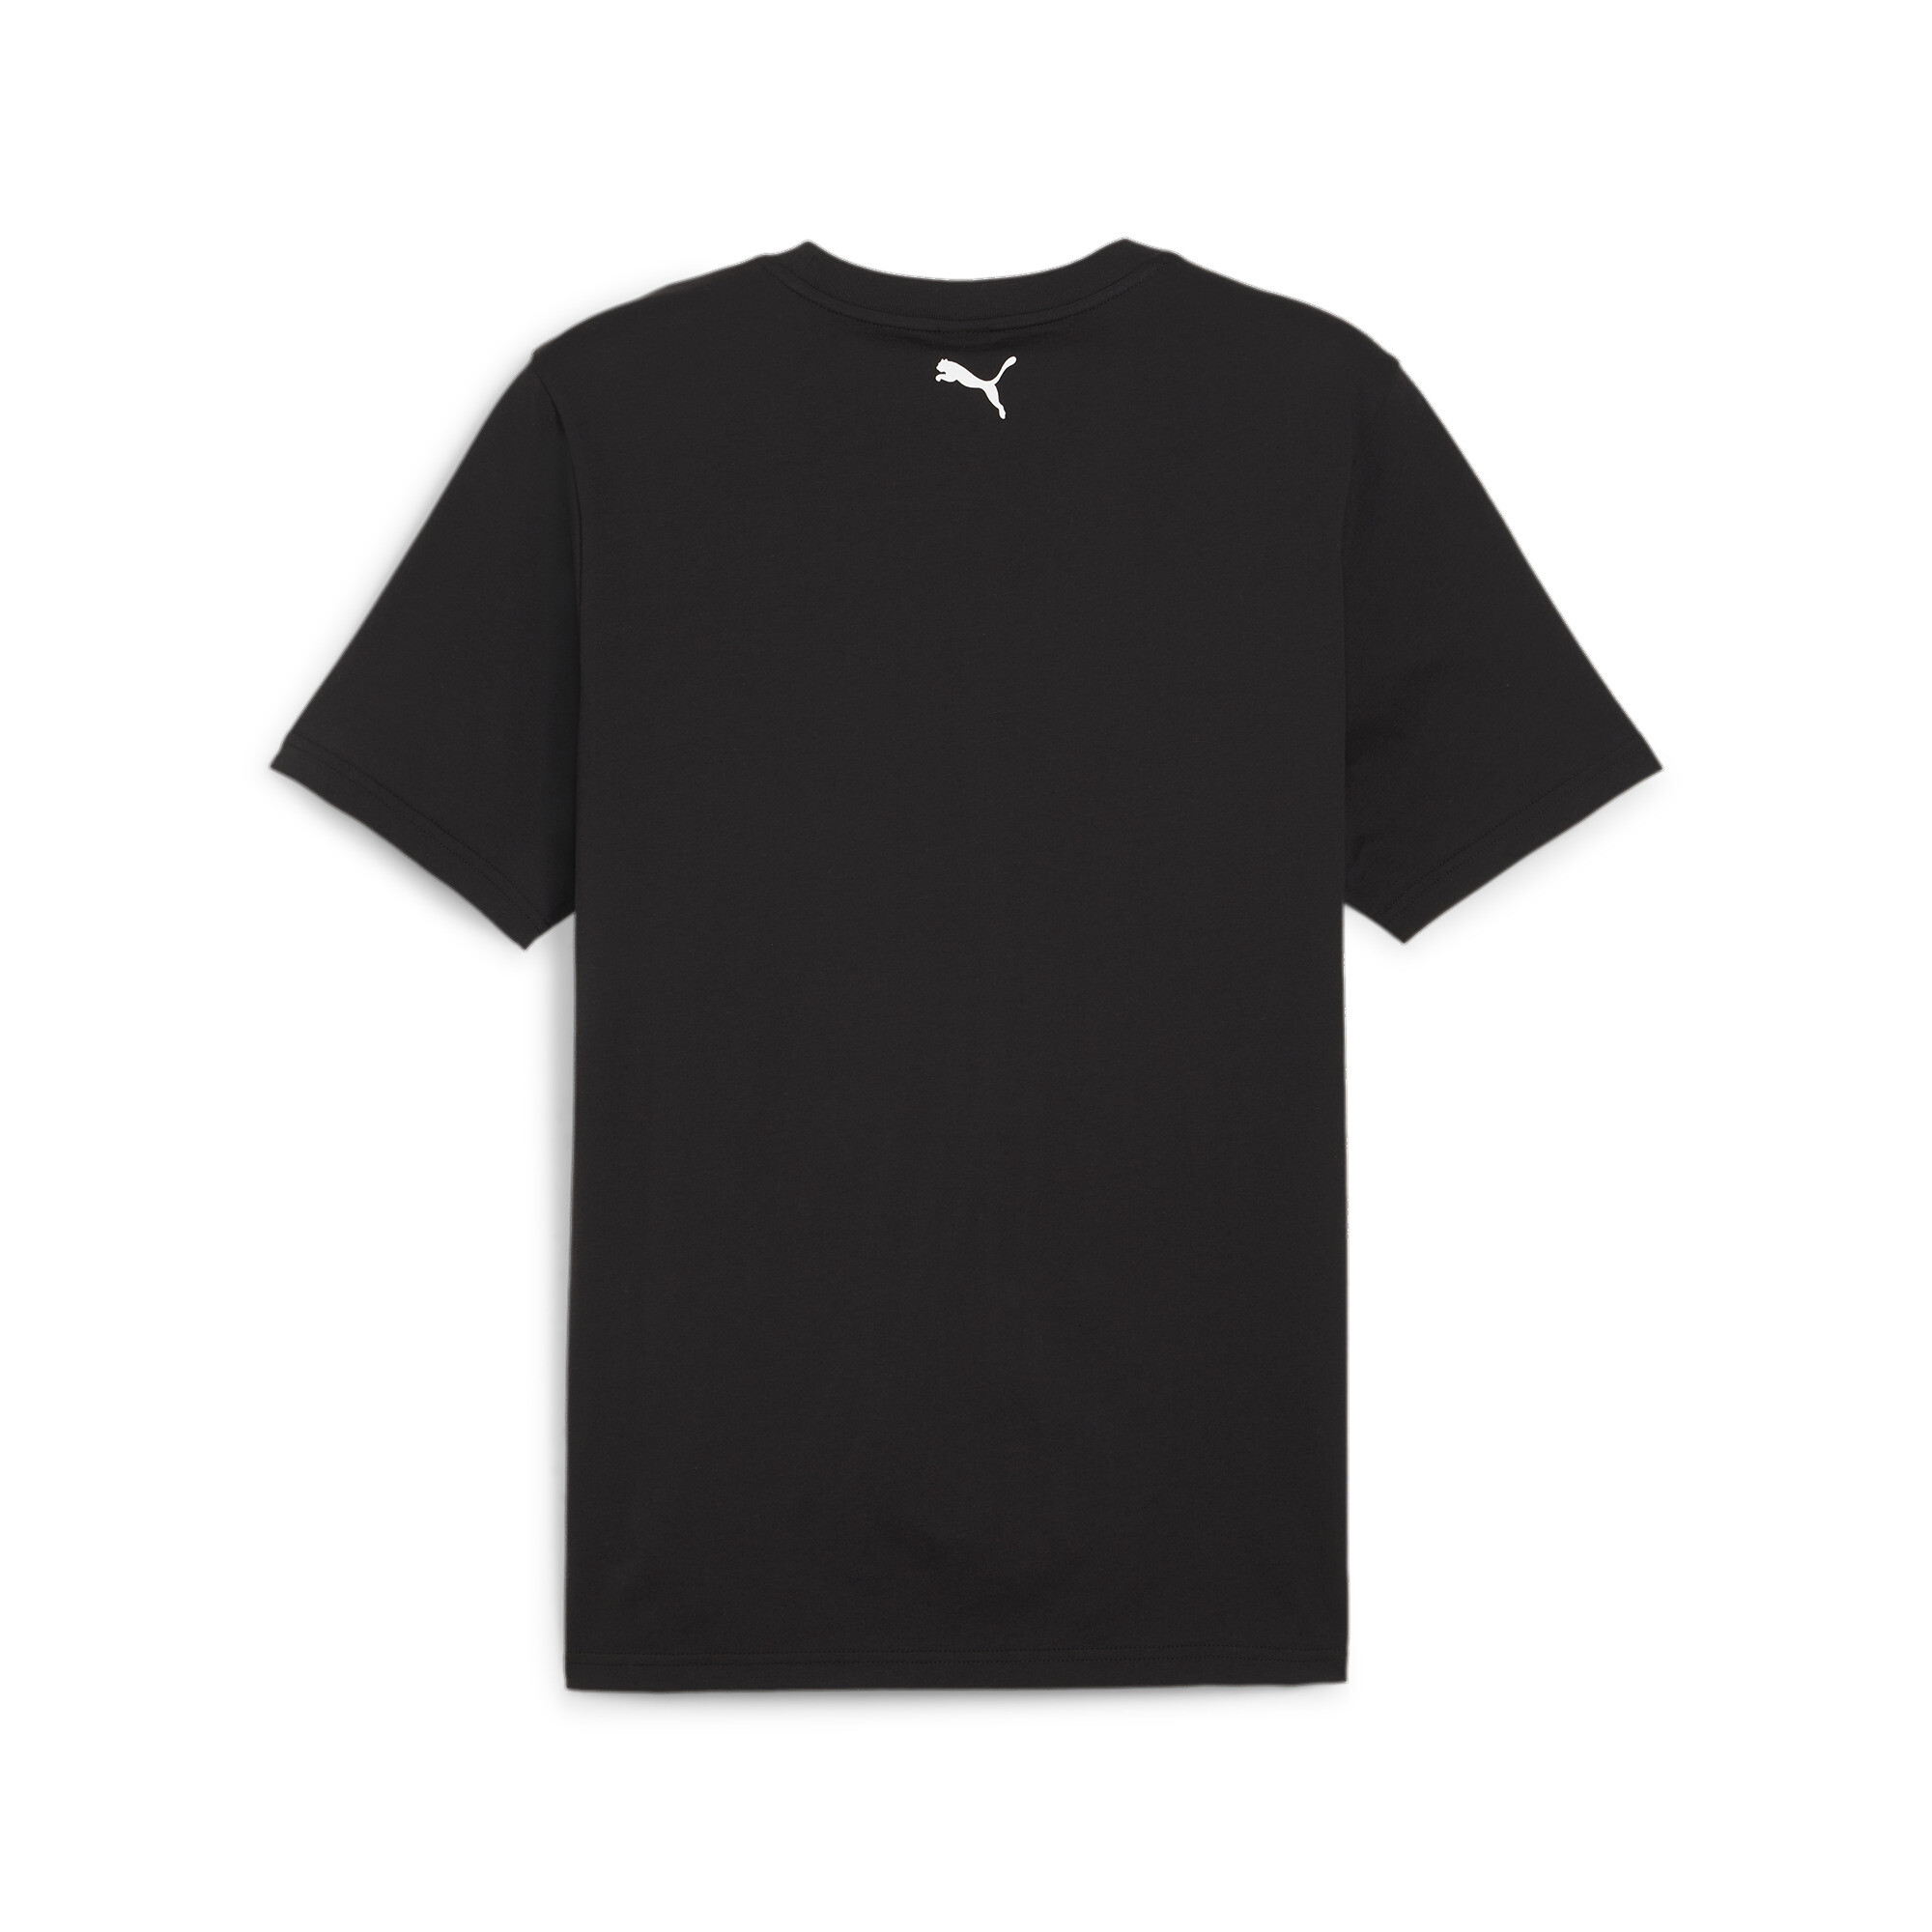 Men's PUMA Scuderia Ferrari Race T-Shirt In Black, Size 2XL